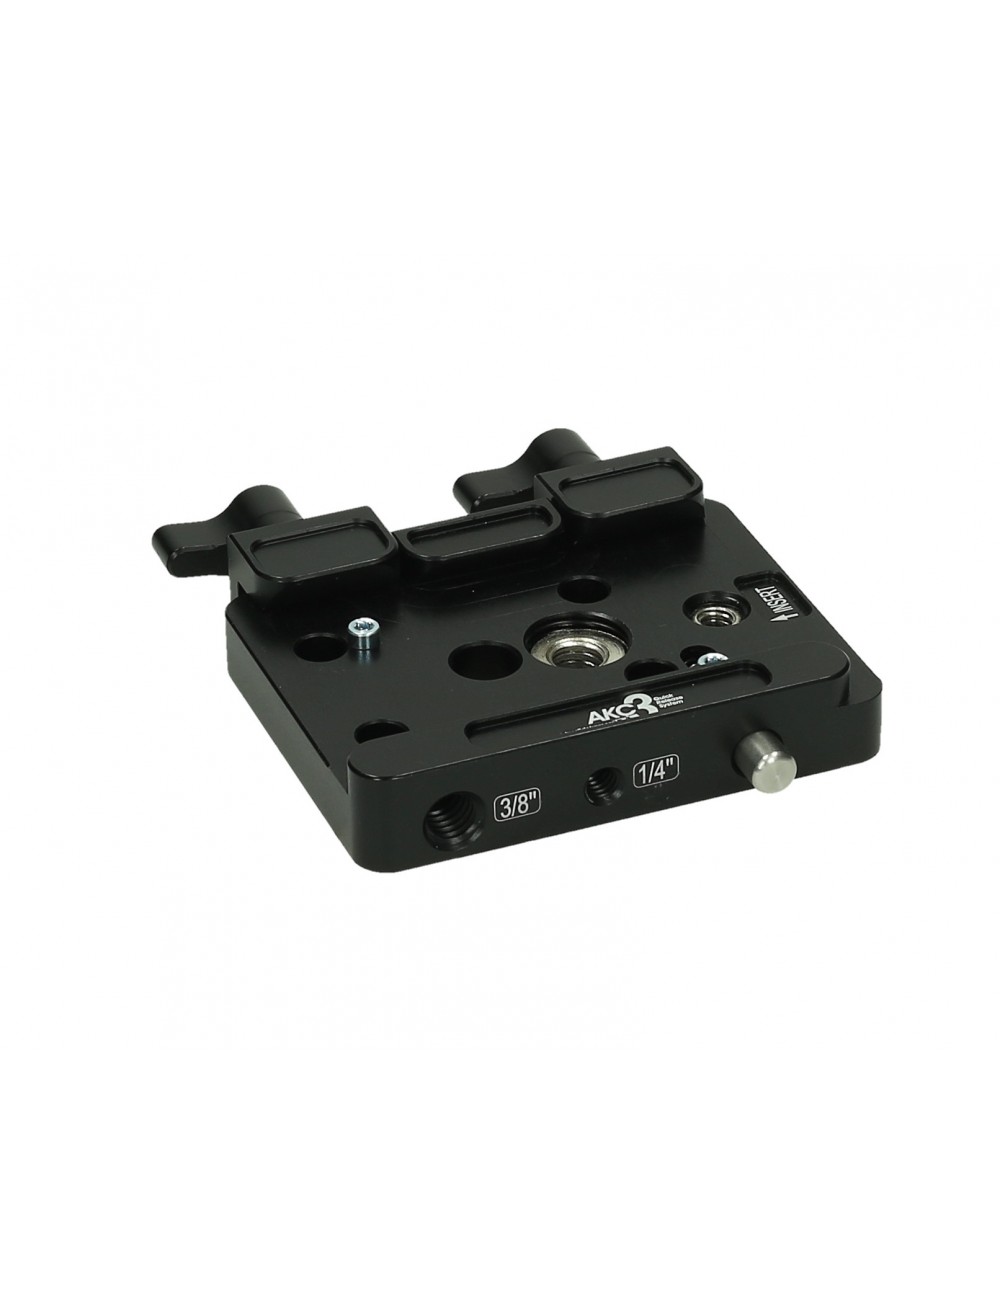 Schnellwechseladapter mit langem Einsatz Slidekamera - Größe: 140 mm x 50 mm x 25 mm Farbe: schwarzGewicht: 0,4 kgMaterial: hart